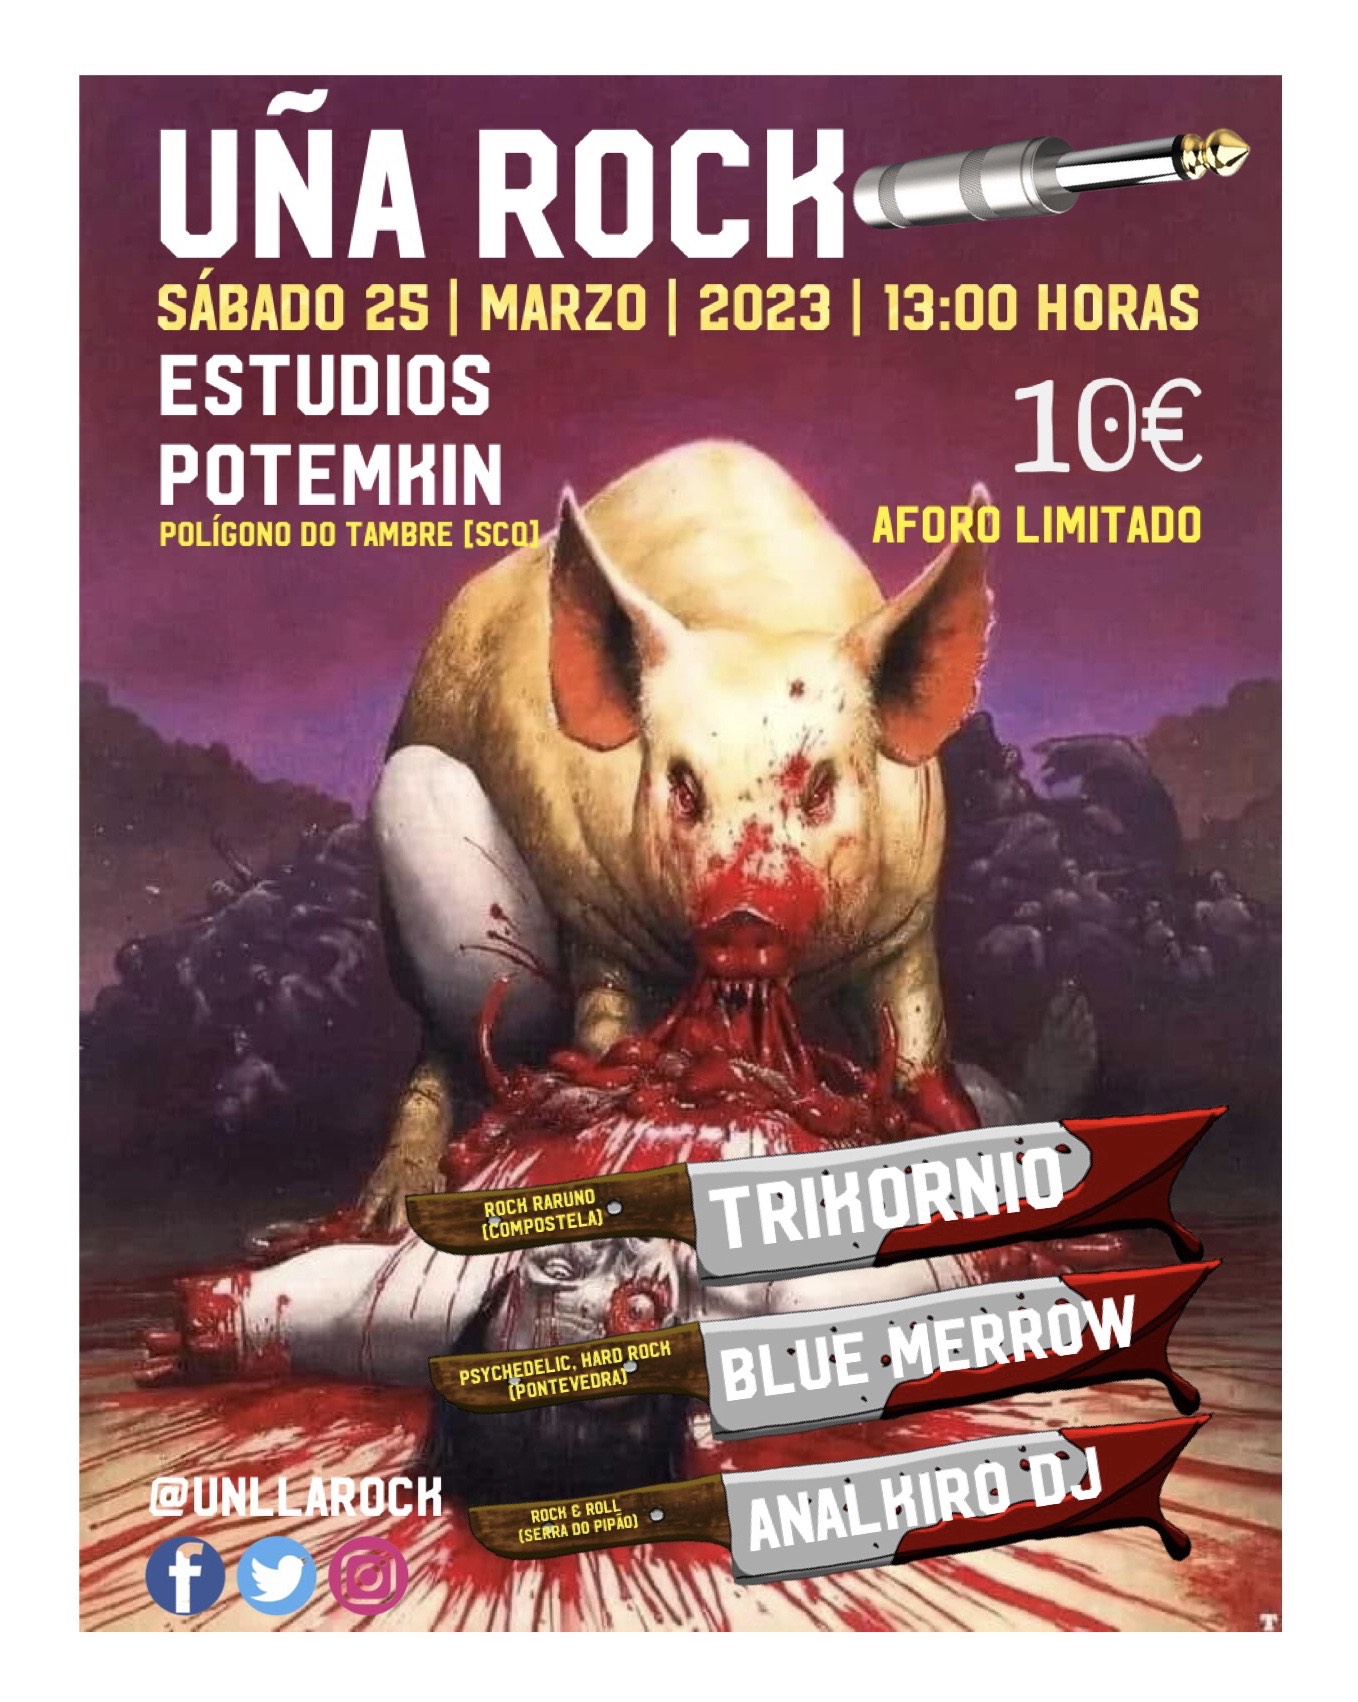 Uña Rock @ Estudios Potemkin (Polígono do Tambre - Santiago)